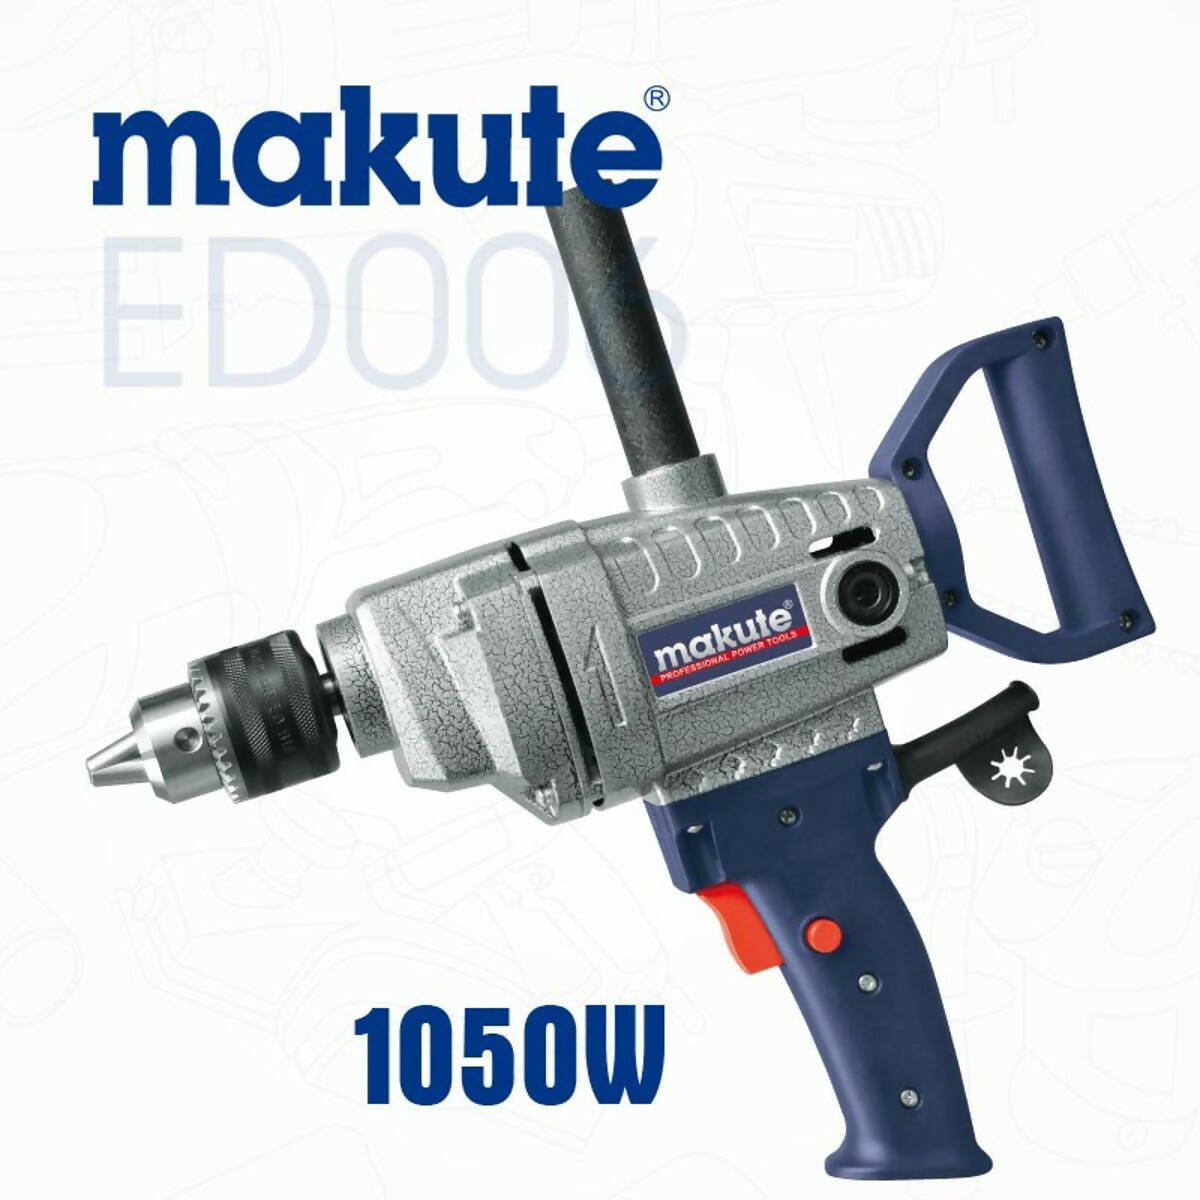 Makute Ed006 16mm Electric Drill 1050watts - 100% Copper